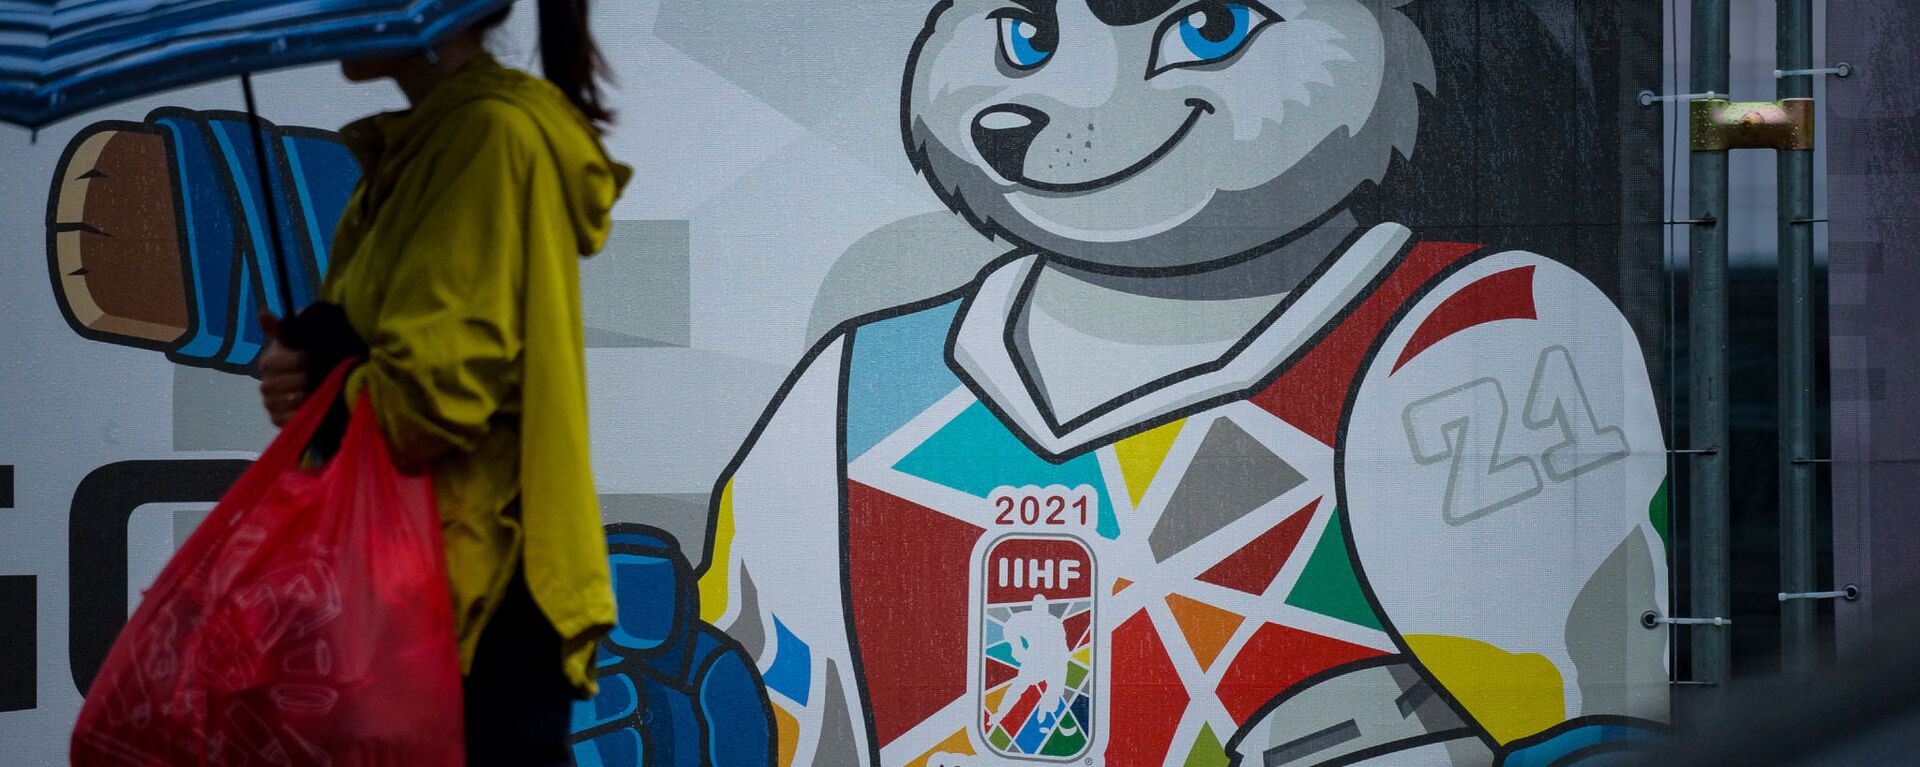 Информационный плакат  на заборе вокруг пузыря где пройдет Чемпионат мира - 2021 по хоккею в Риге - Sputnik Латвия, 1920, 31.05.2021